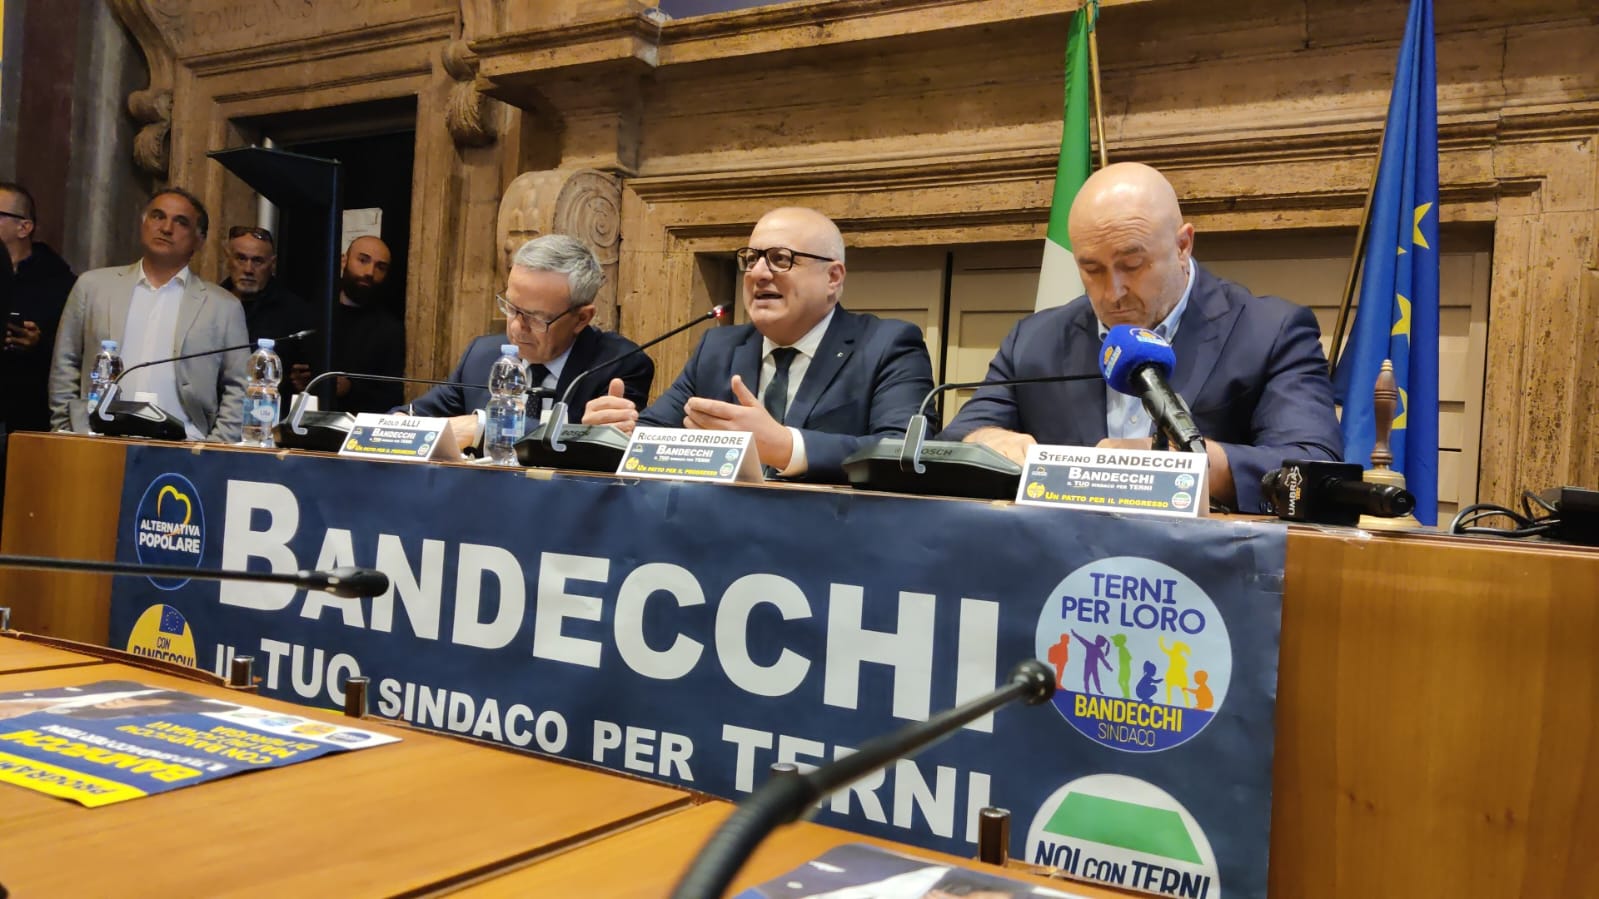 Presentazione liste Bandecchi sindaco Terni _ Bandecchi, Alli e Corridore (1)